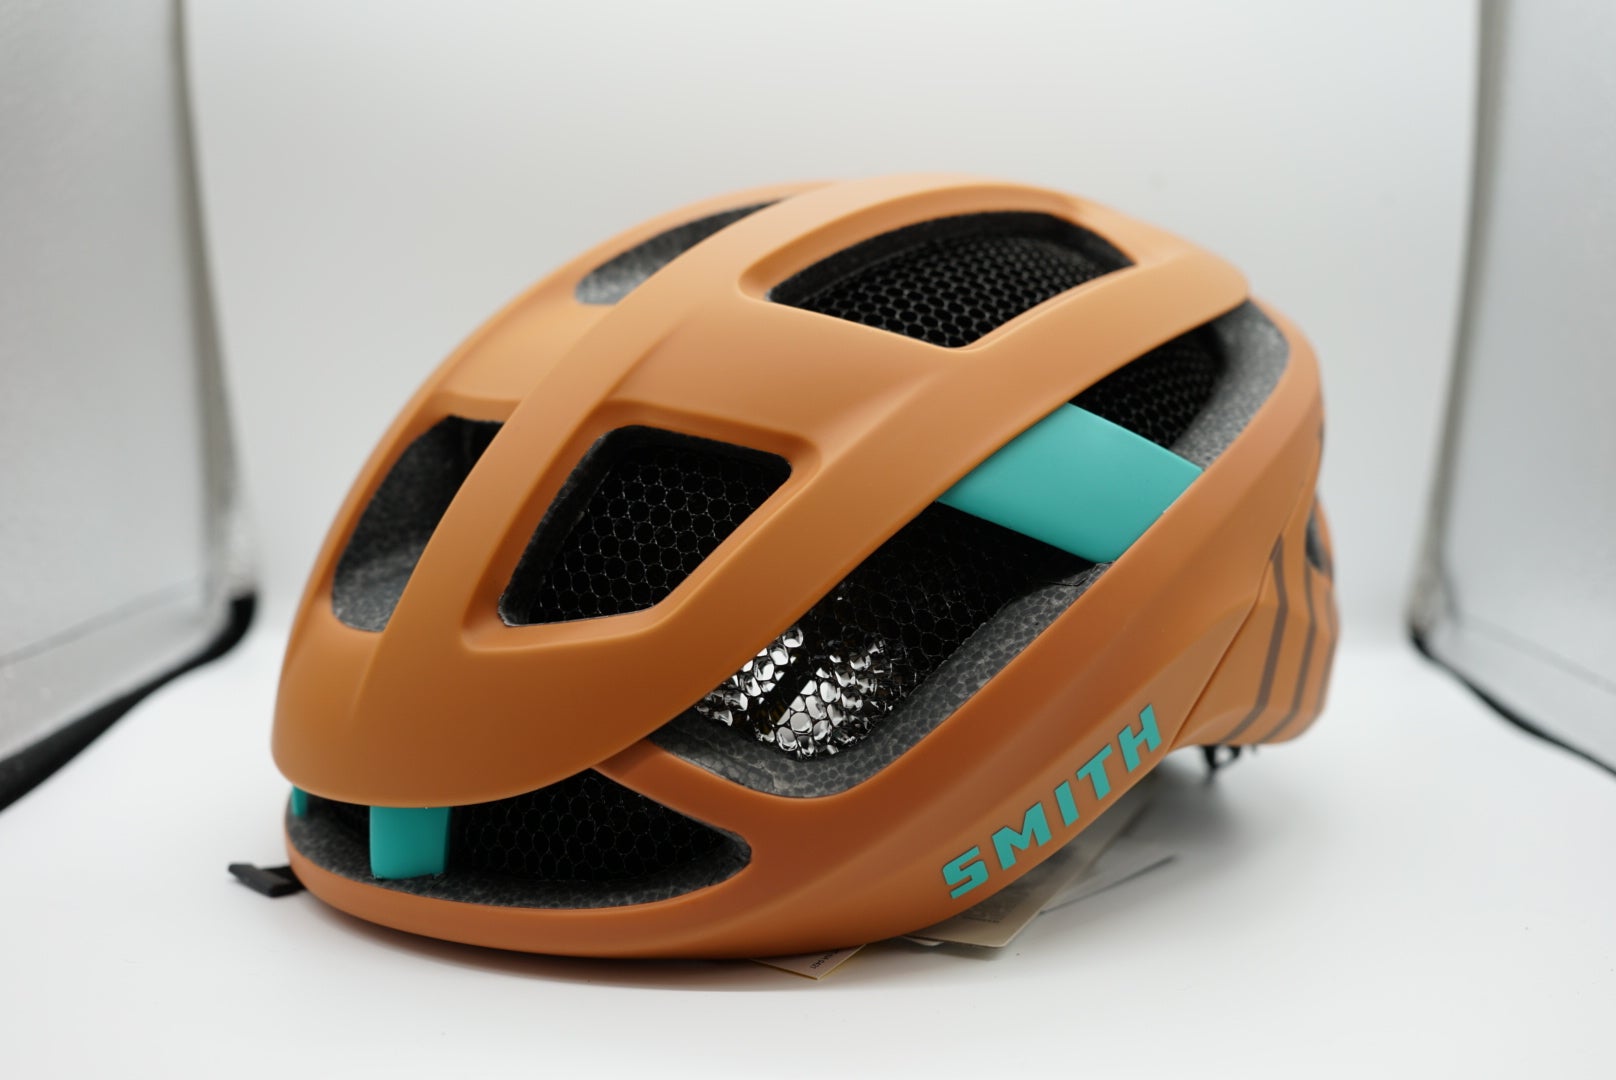 ヘルメット 自転車 サイクリング 輸入 クロスバイク SMITH Forefront MTB Cycle Helmet Adult Mountain Bike Helmet with MIPS Technology Lightweight Impact Protection for Men  Women Adjustable ヘルメット 自転車 サイクリング 輸入 クロスバイク